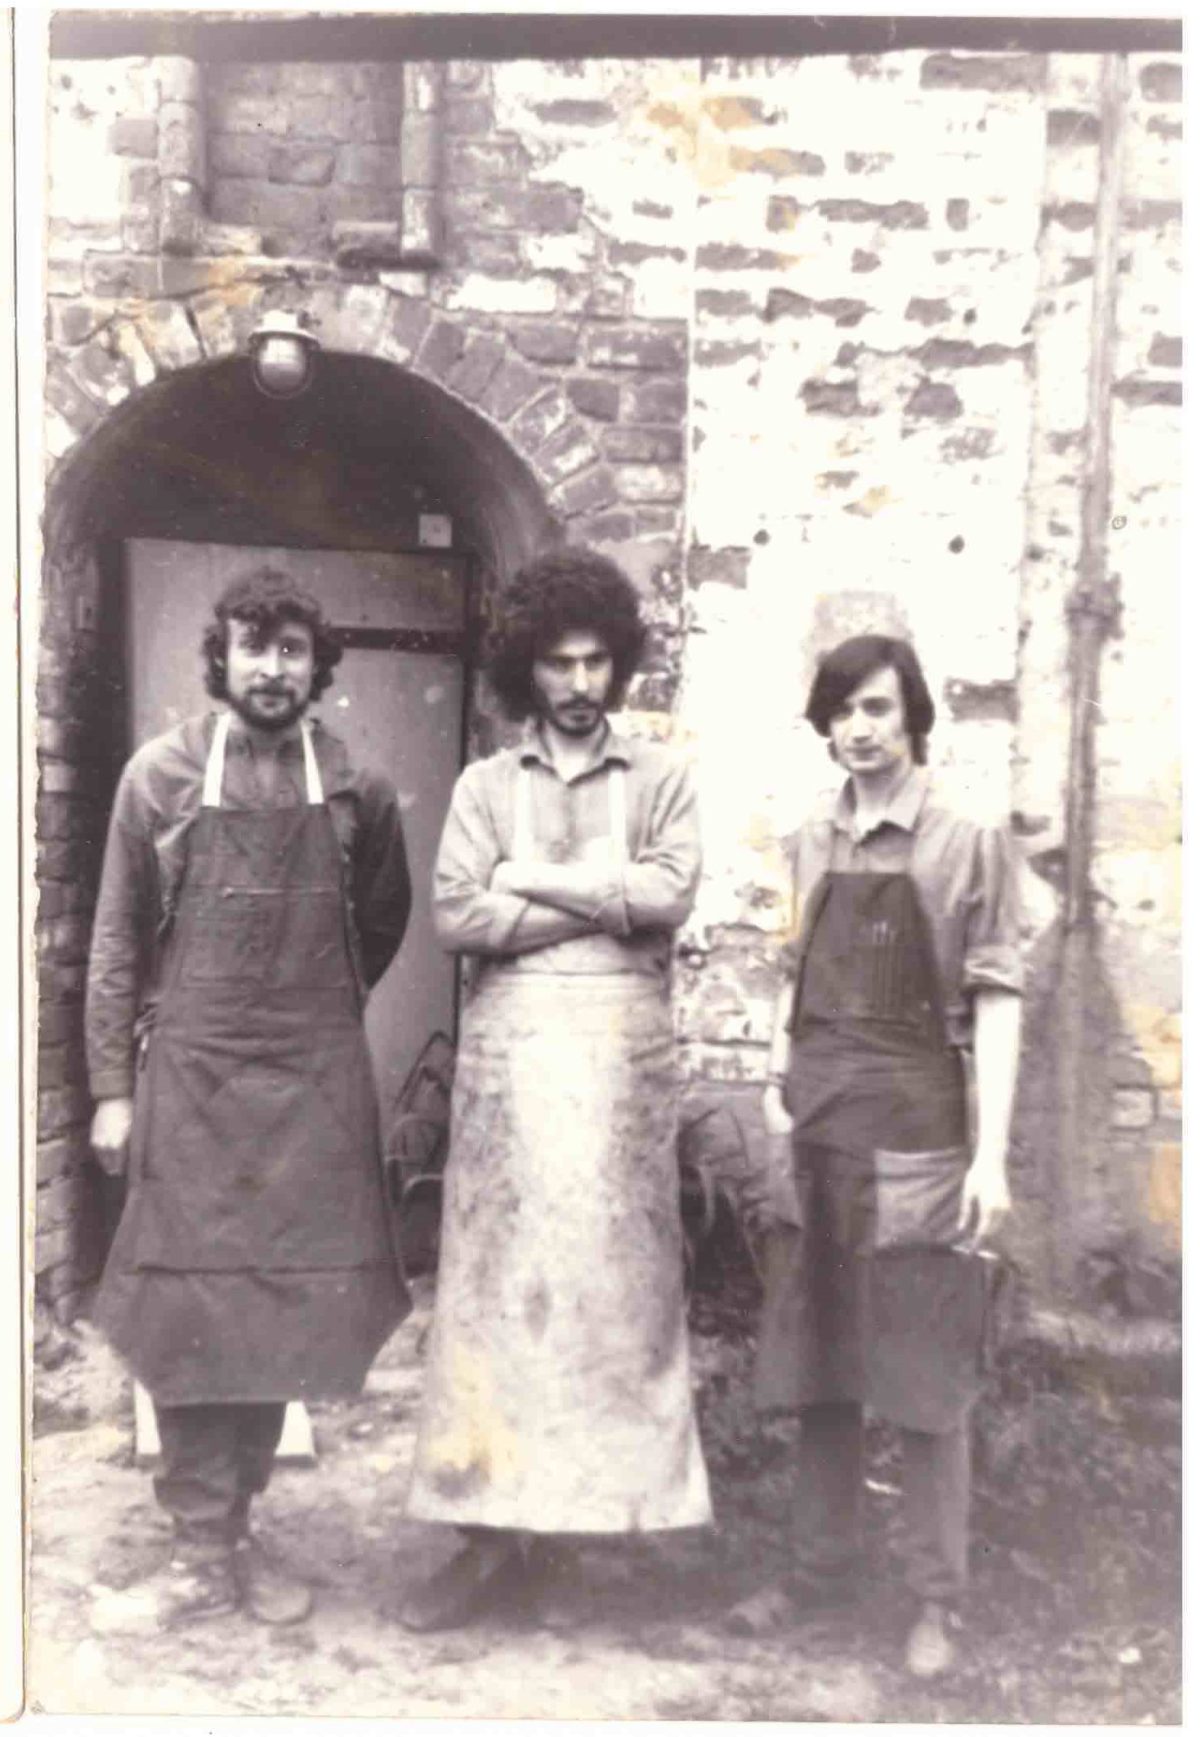 Самая первая моя мастерская после училища. Донской монастырь 1990- 1991 год. Слева направо на фото я (Всеволод Полтавцев), Дмитрий Грачёв, и Филипп Буксин. 